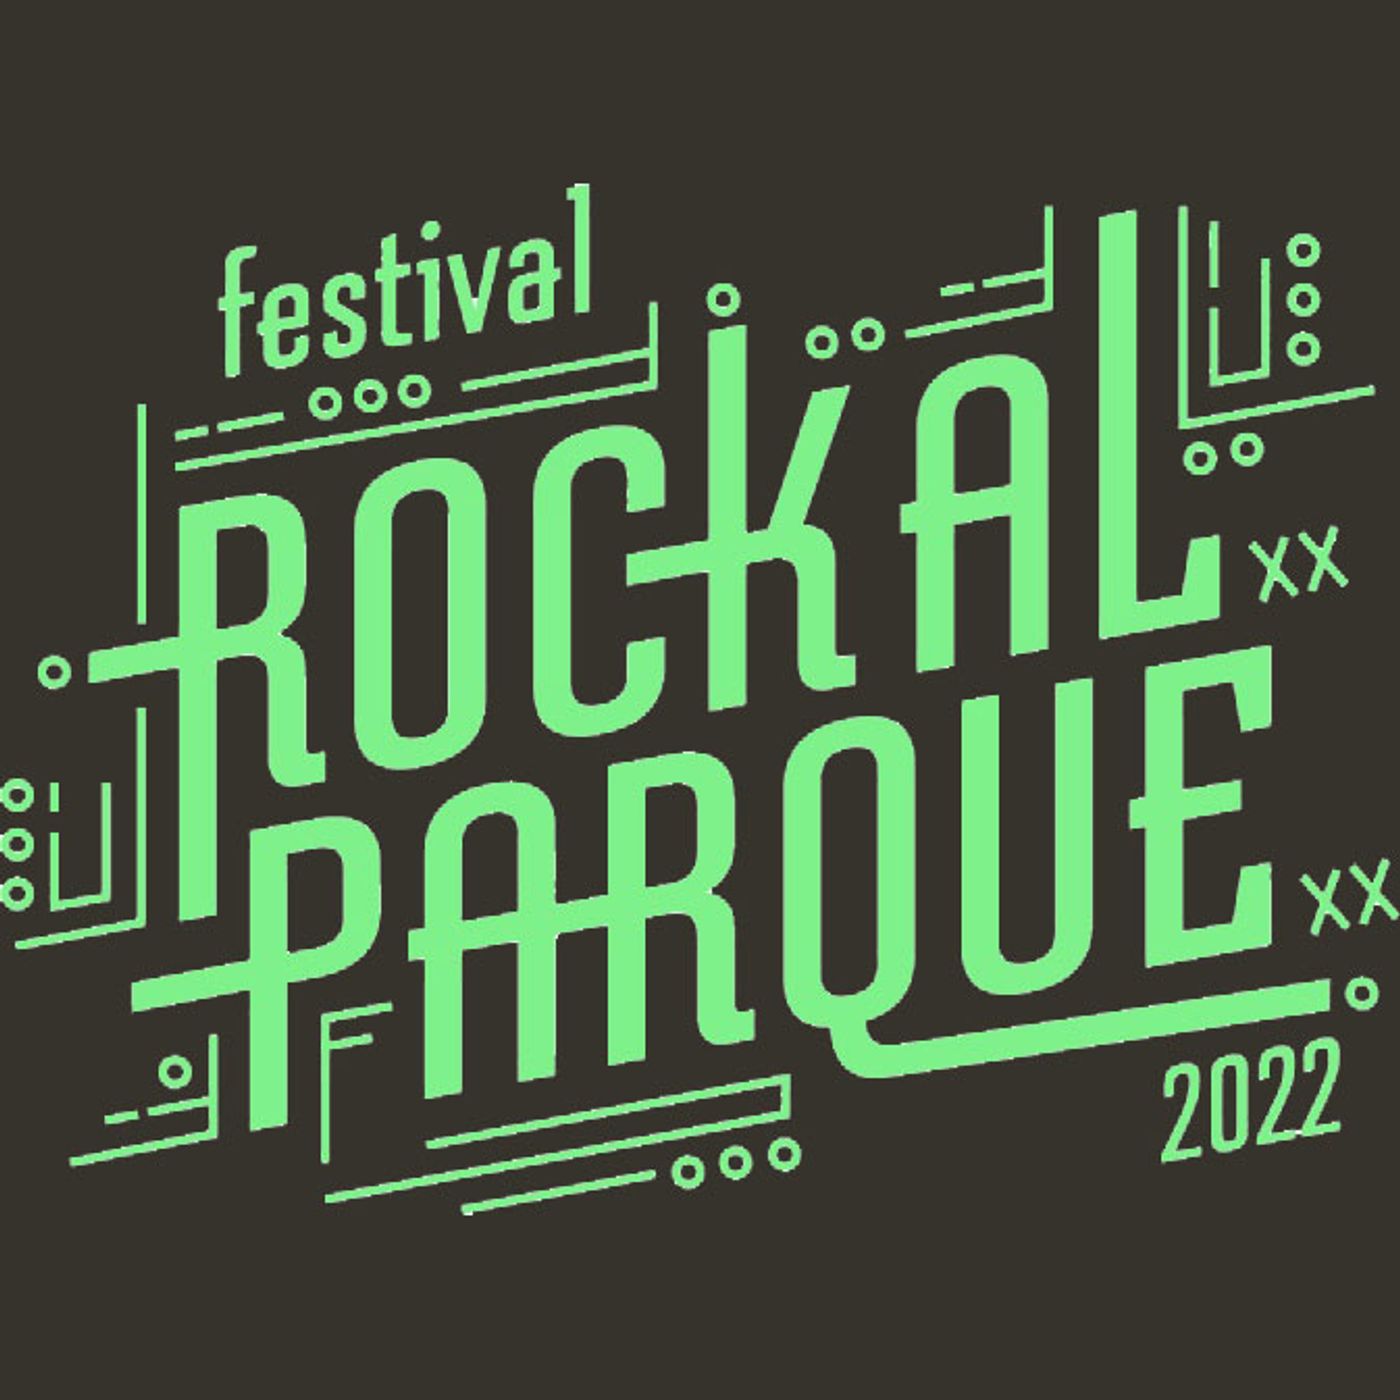 Rock Al Parque anuncia cartel y horarios definitivos!